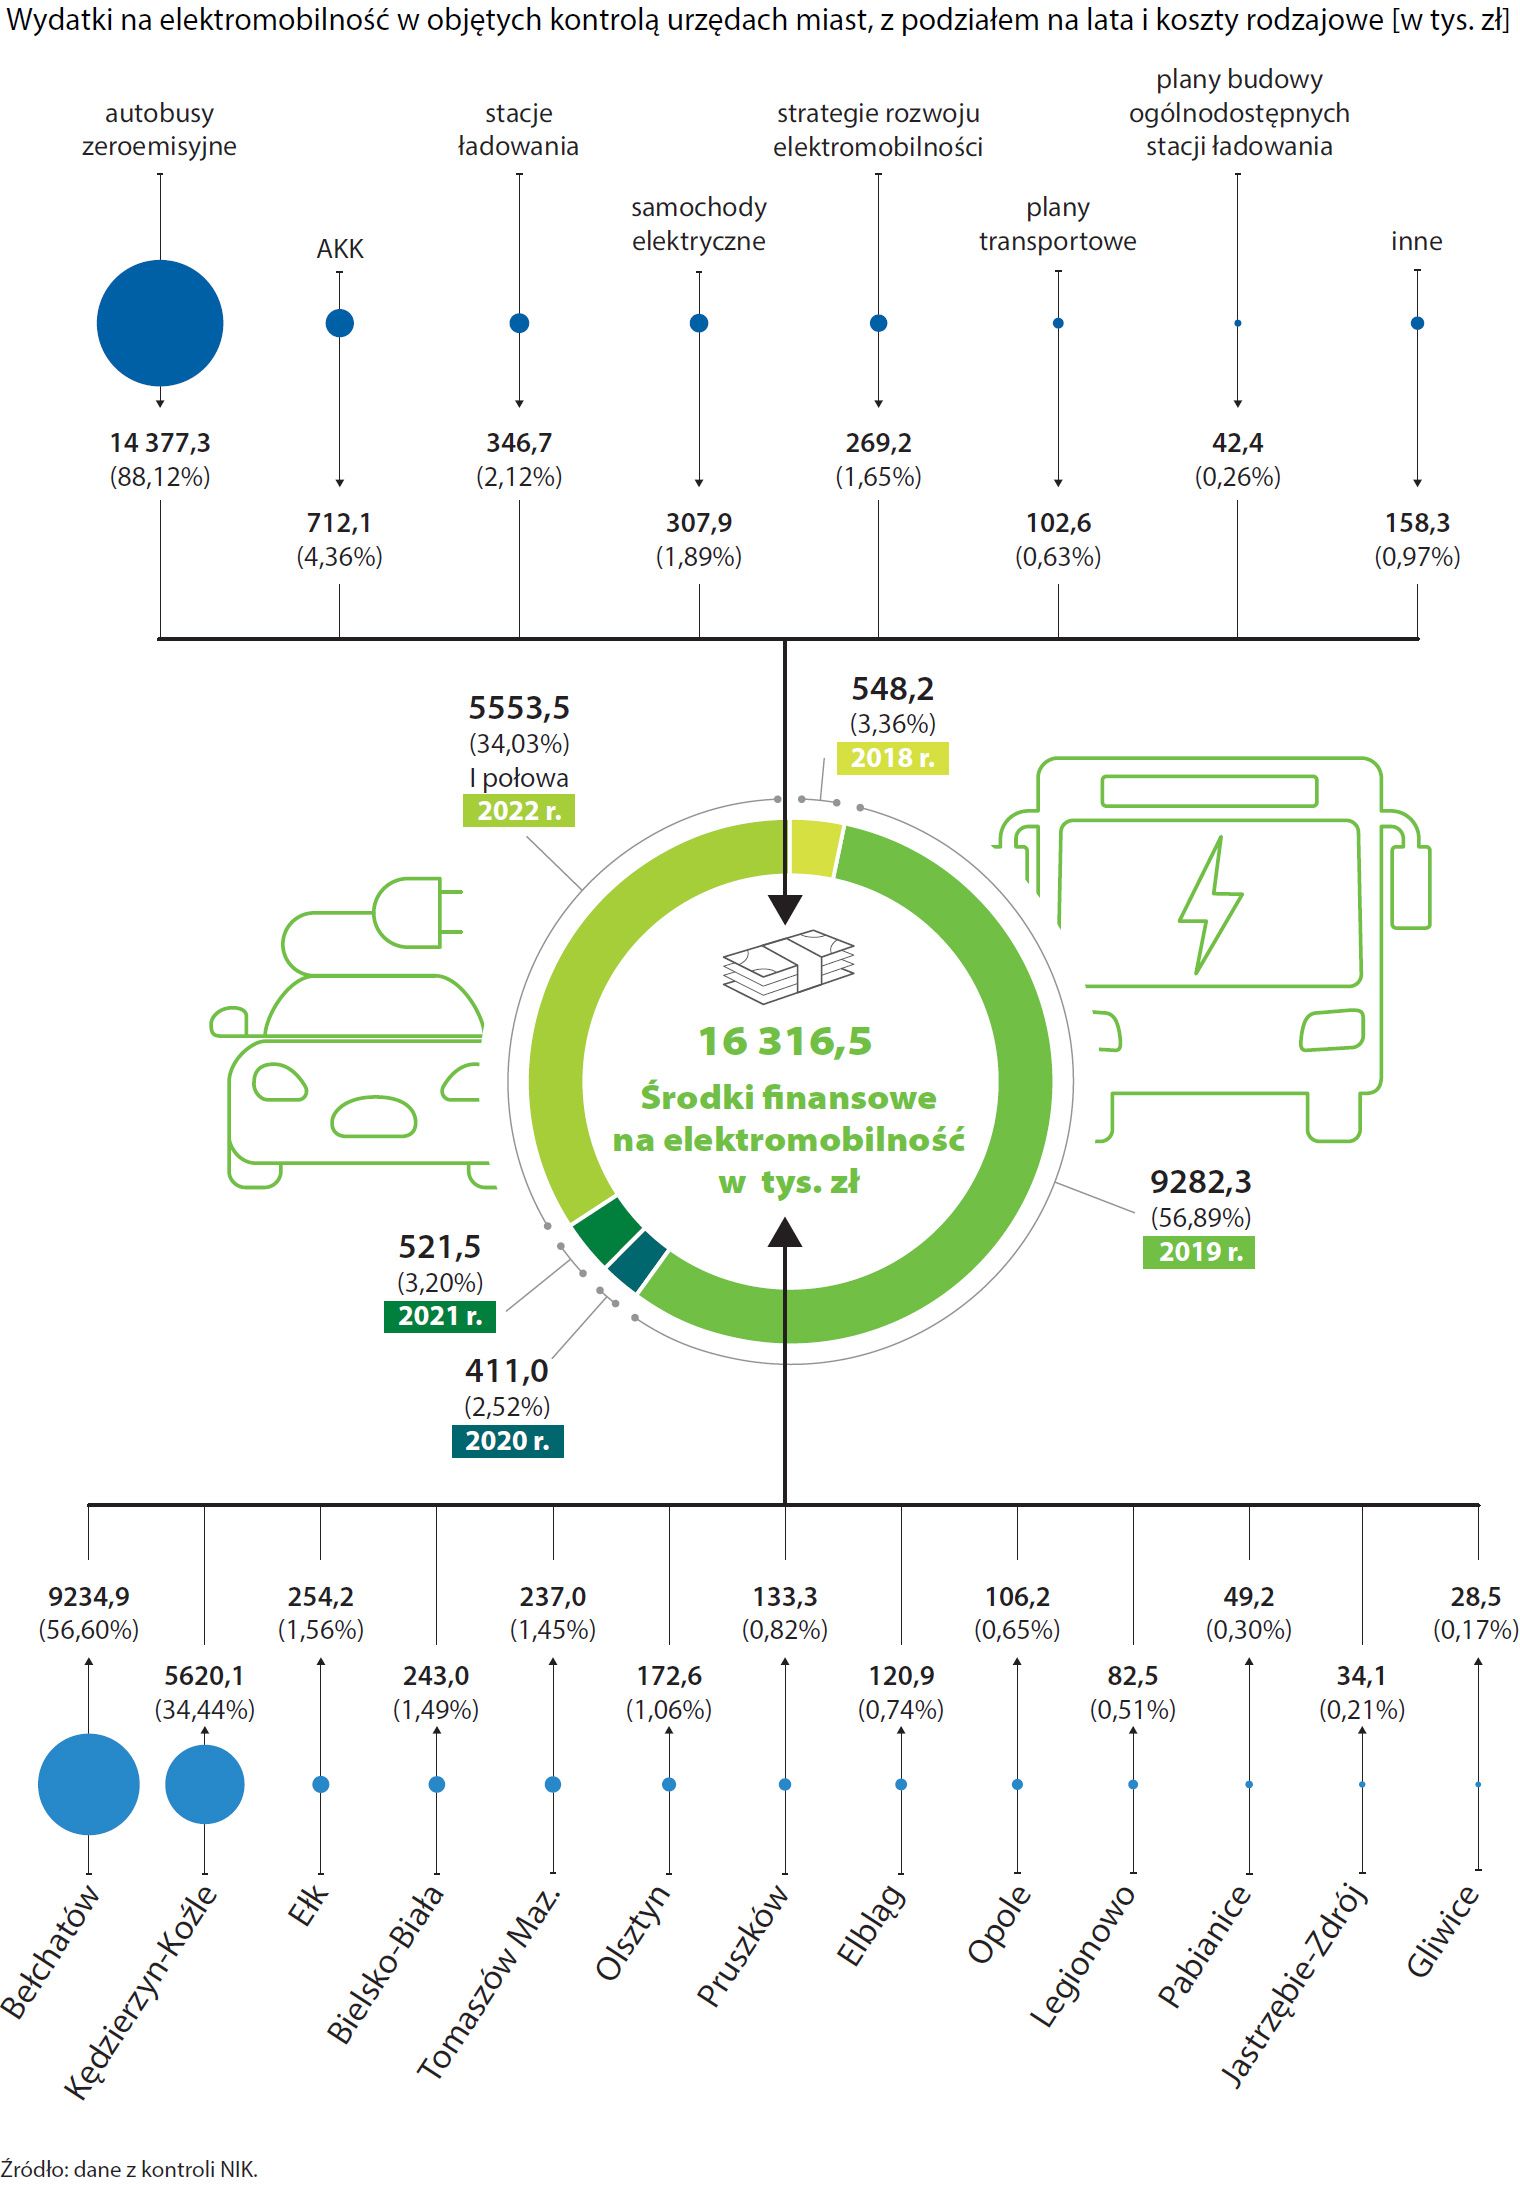 Wydatki na elektromobilność w objętych kontrolą urzędach miast (opis grafiki poniżej)